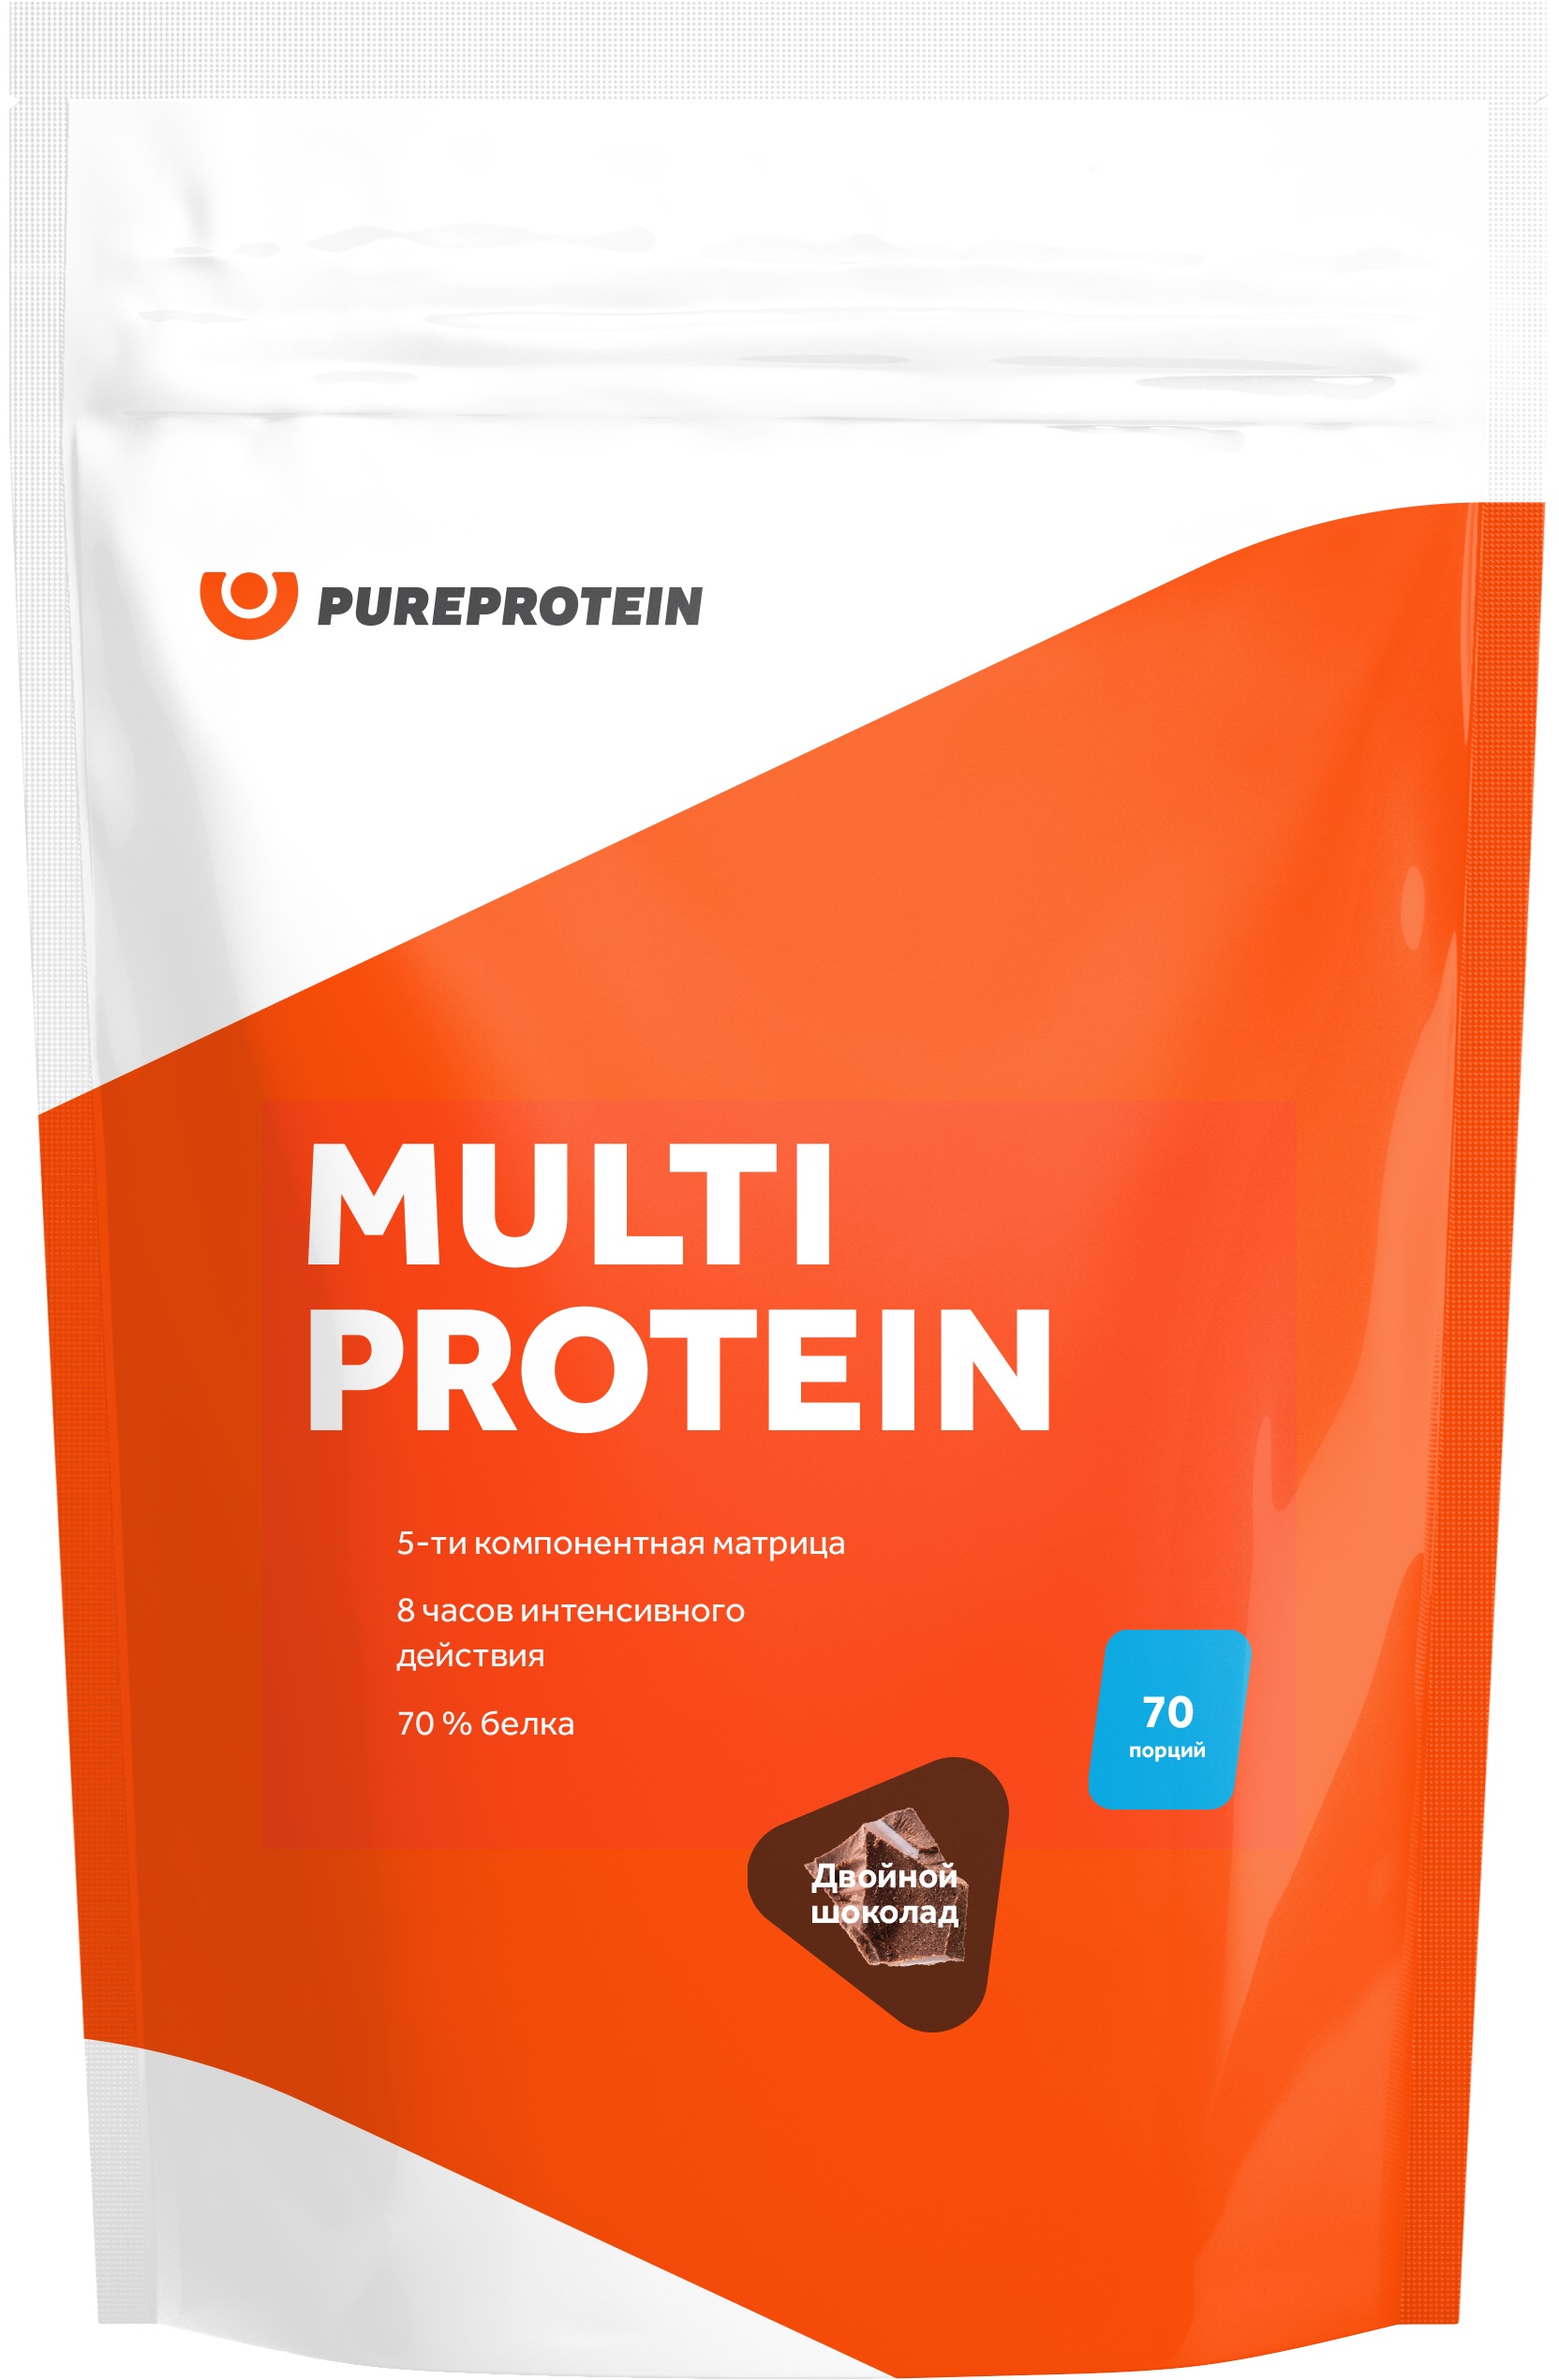 Мультикомпонентный протеин PUREPROTEIN Двойной шоколад - фото 1